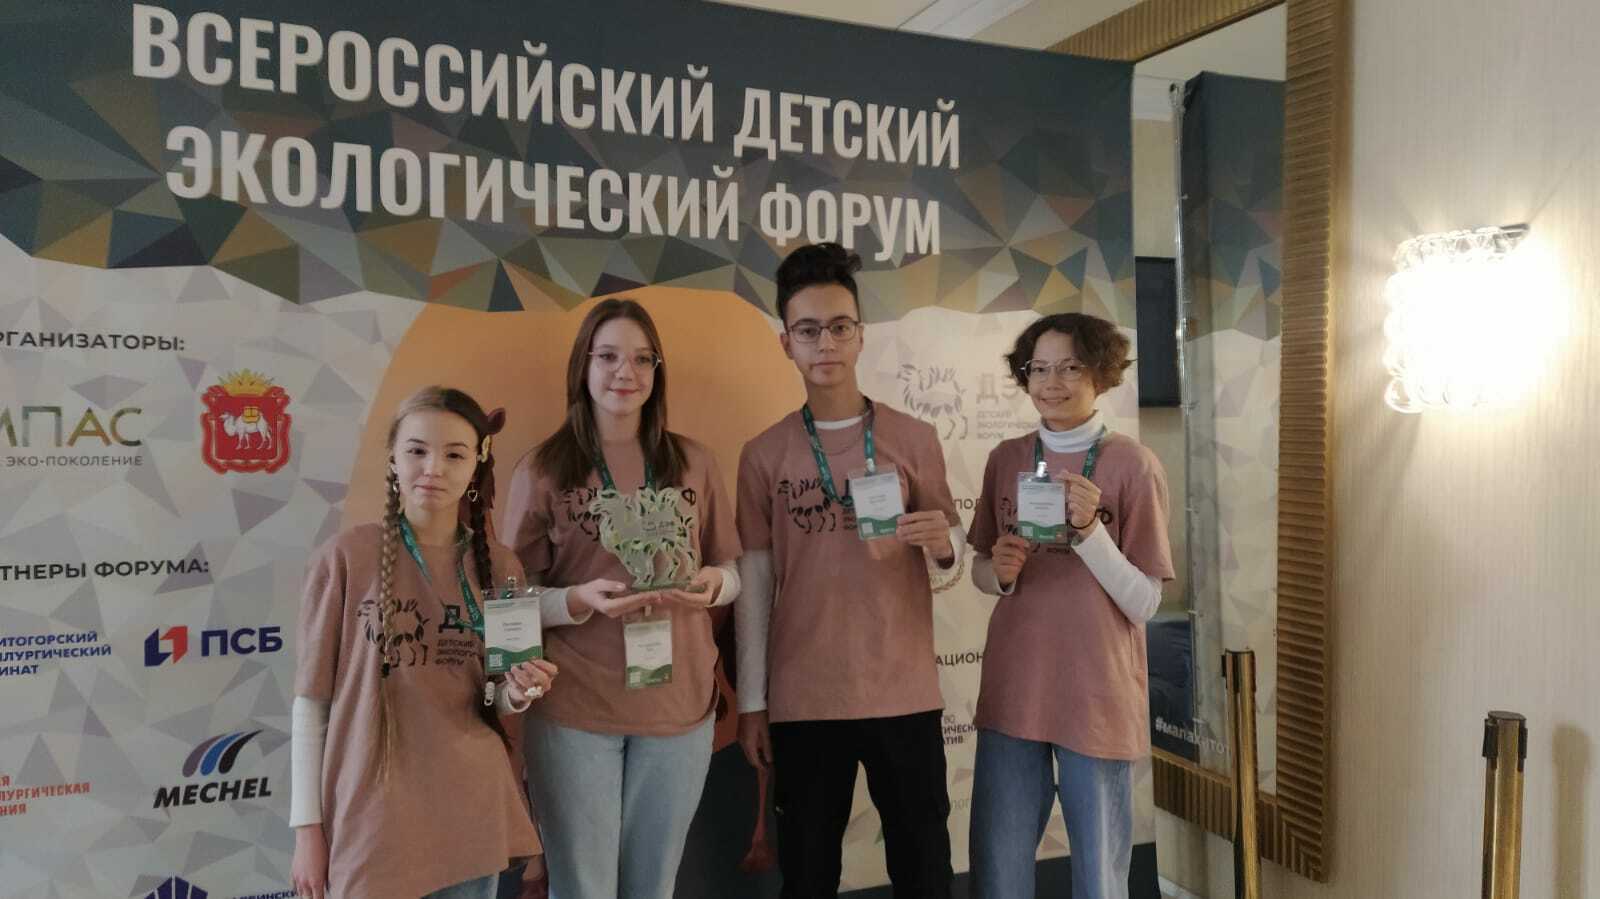 Сибайских школьников пригласили на Всероссийский детский экологический форум